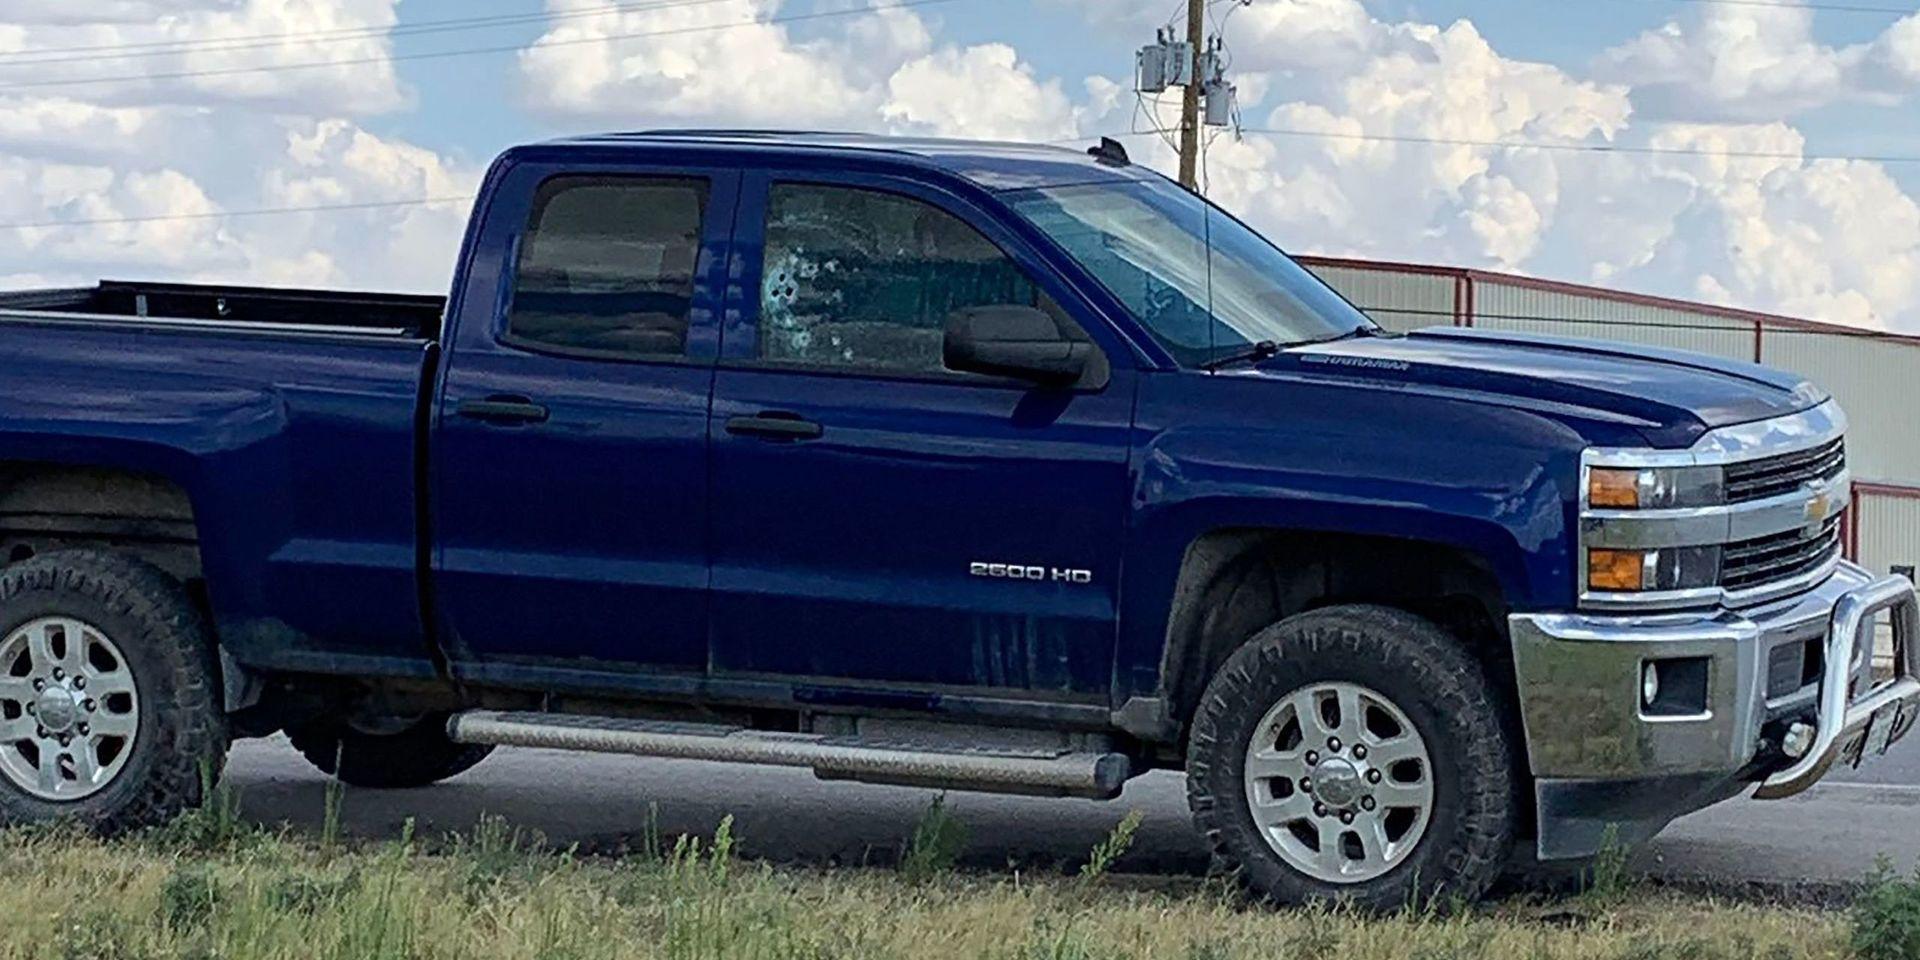 En pickup har skotthål i fönstret efter att ha blivit beskjuten på motorvägen mellan Odessa och Midland i Texas. 